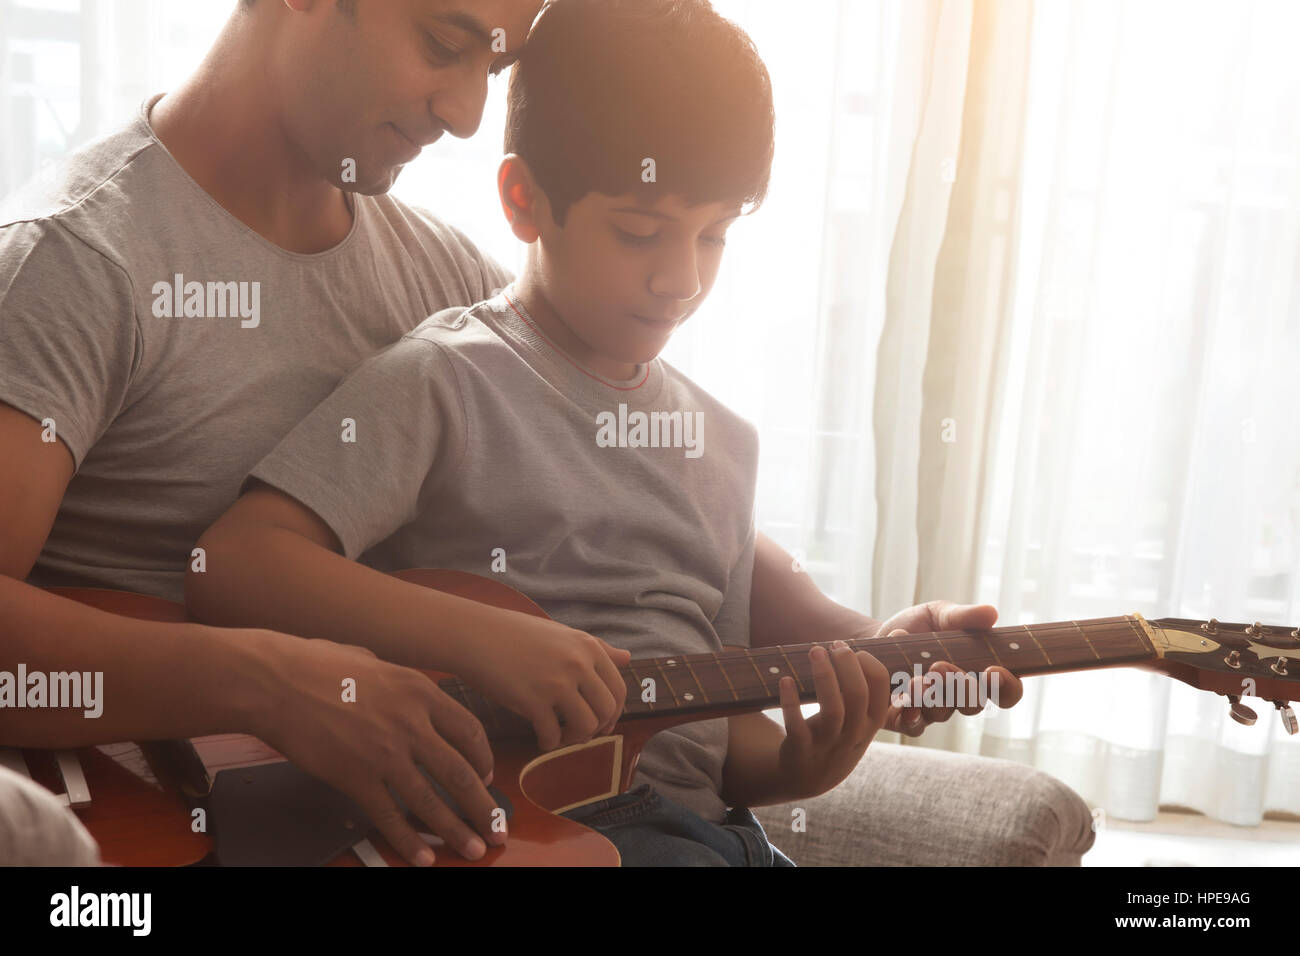 Padre enseñar a su hijo a tocar la guitarra Foto de stock